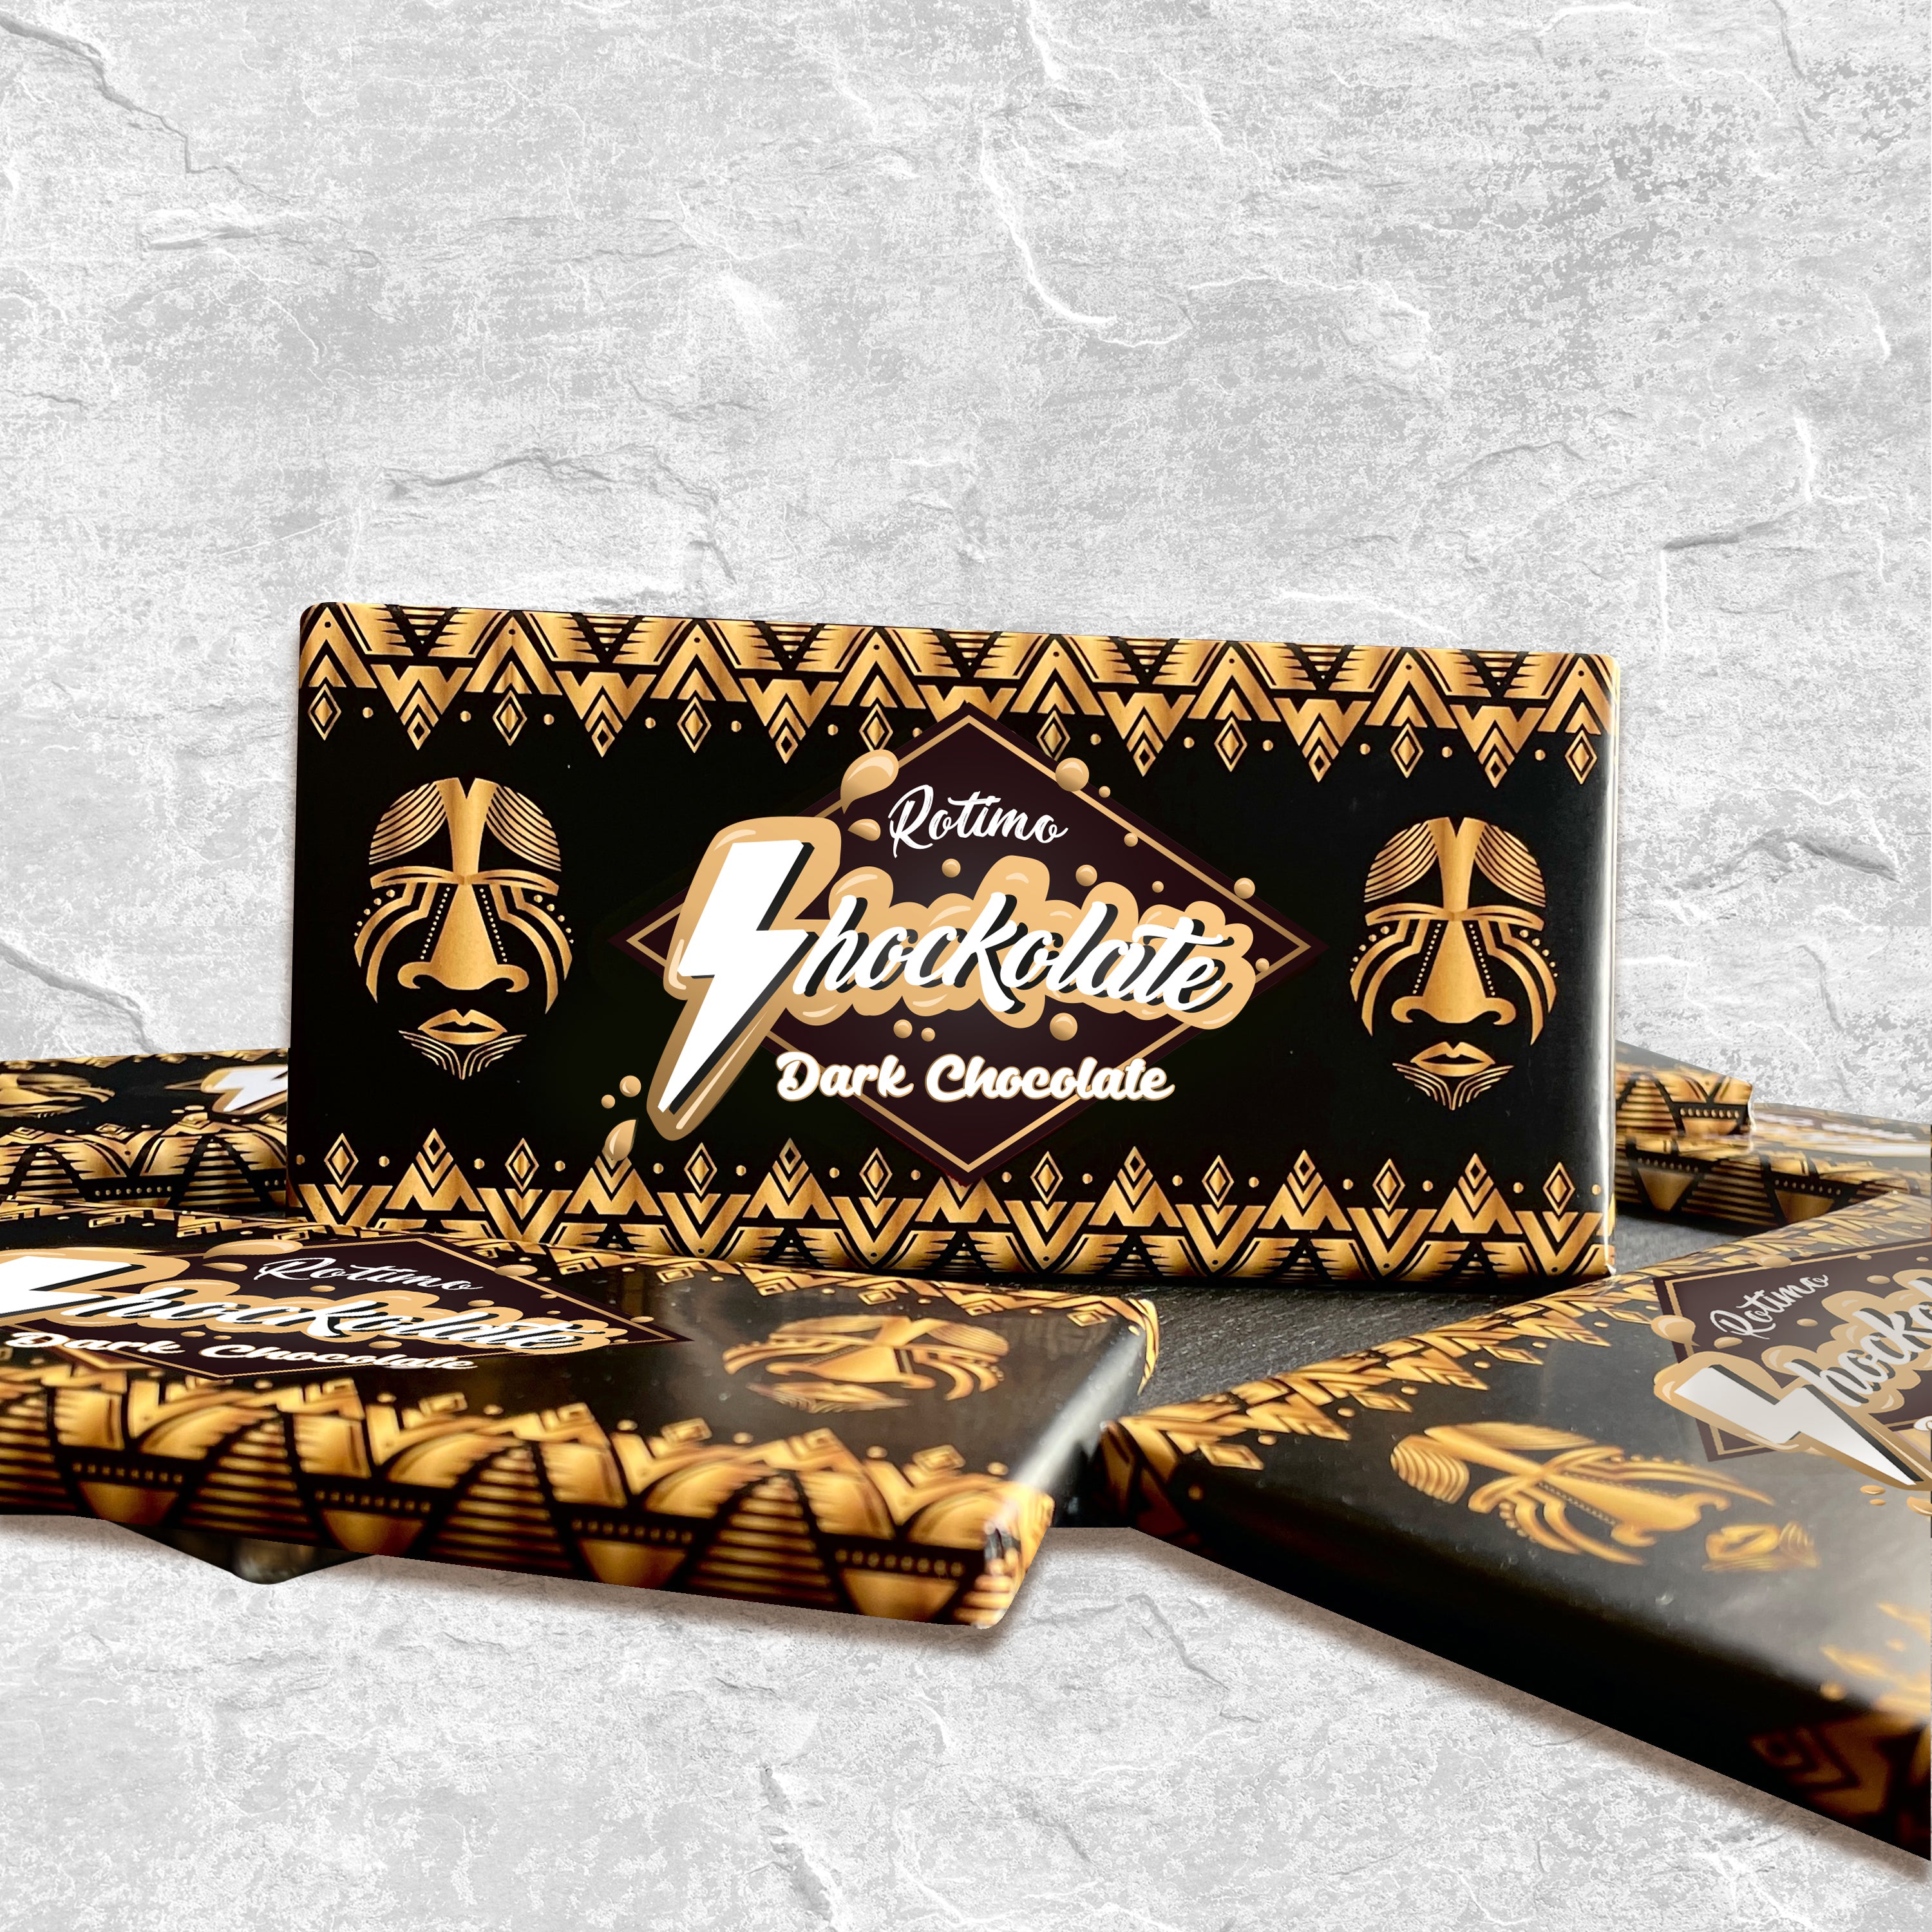 Shockolate Dark Chocolate bars 90g (Pack of 4)